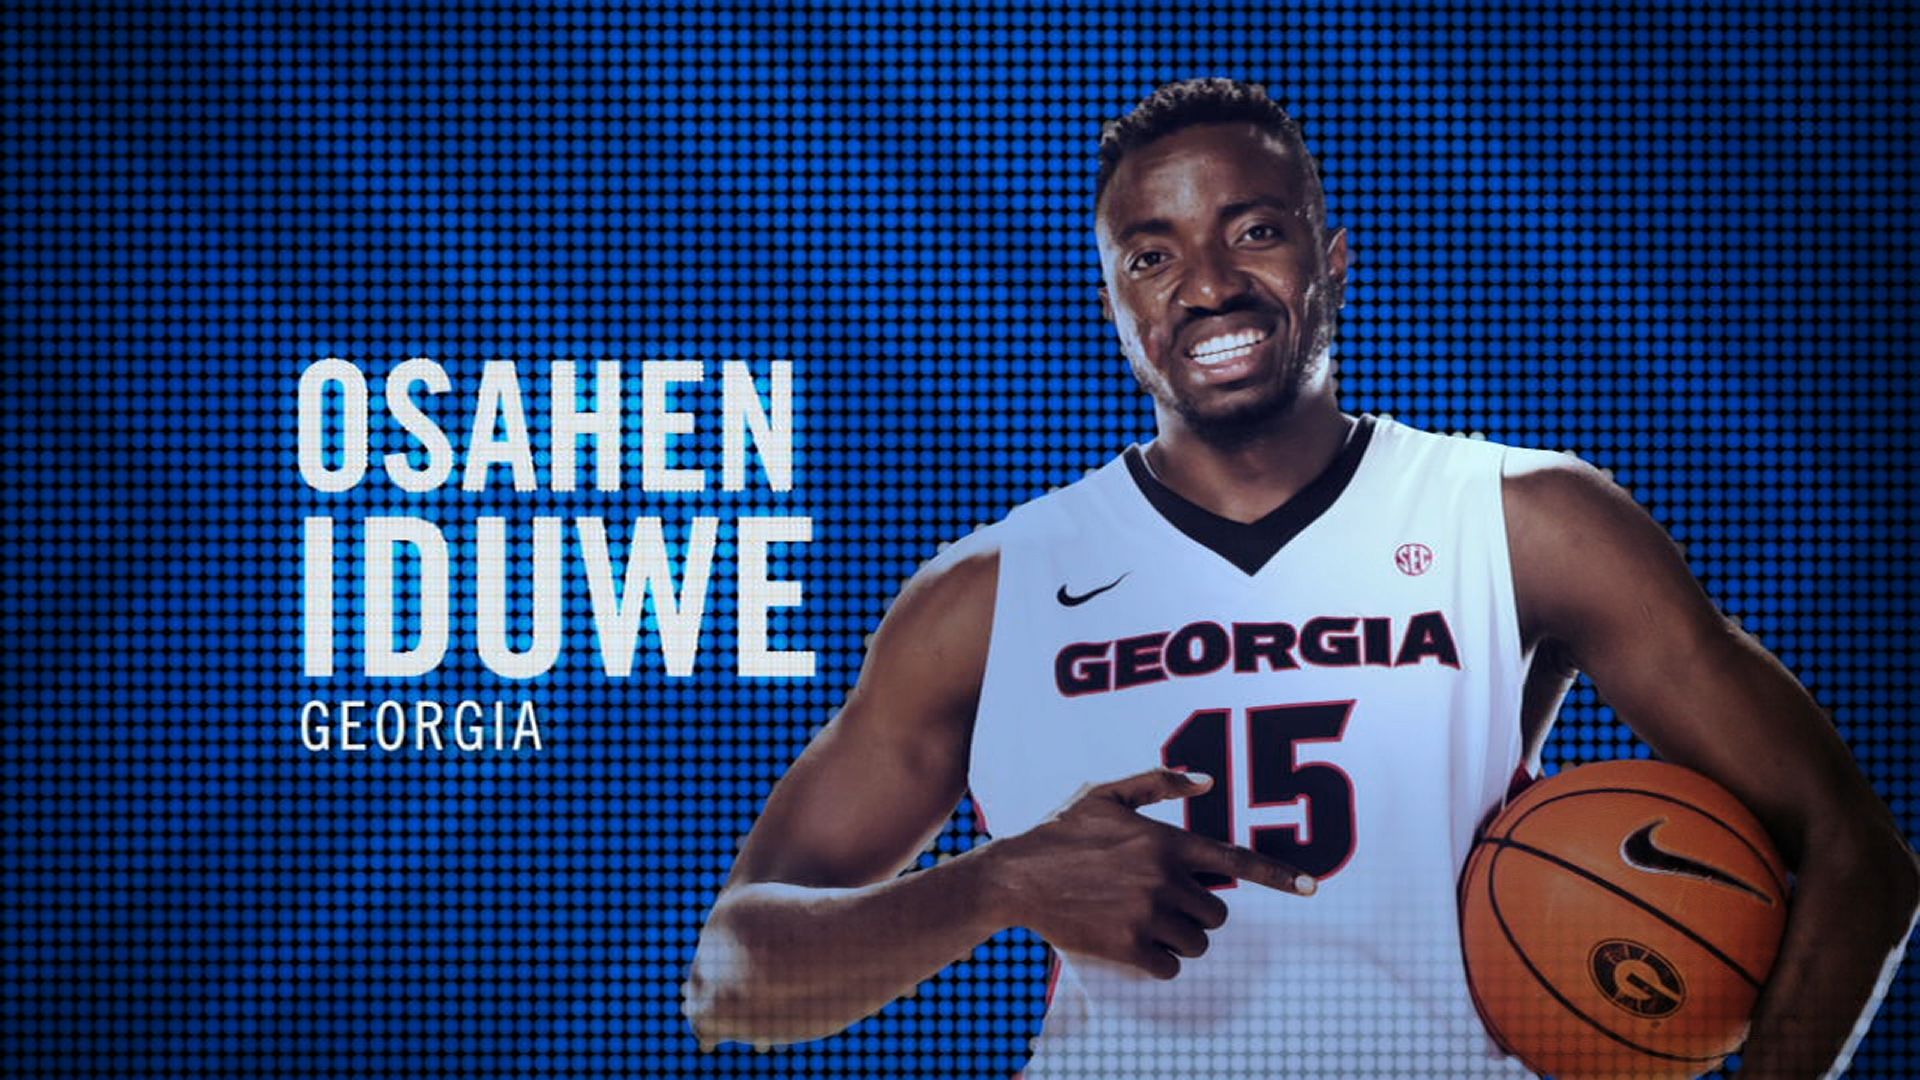 I am the SEC: Georgia's Osahen Iduwe